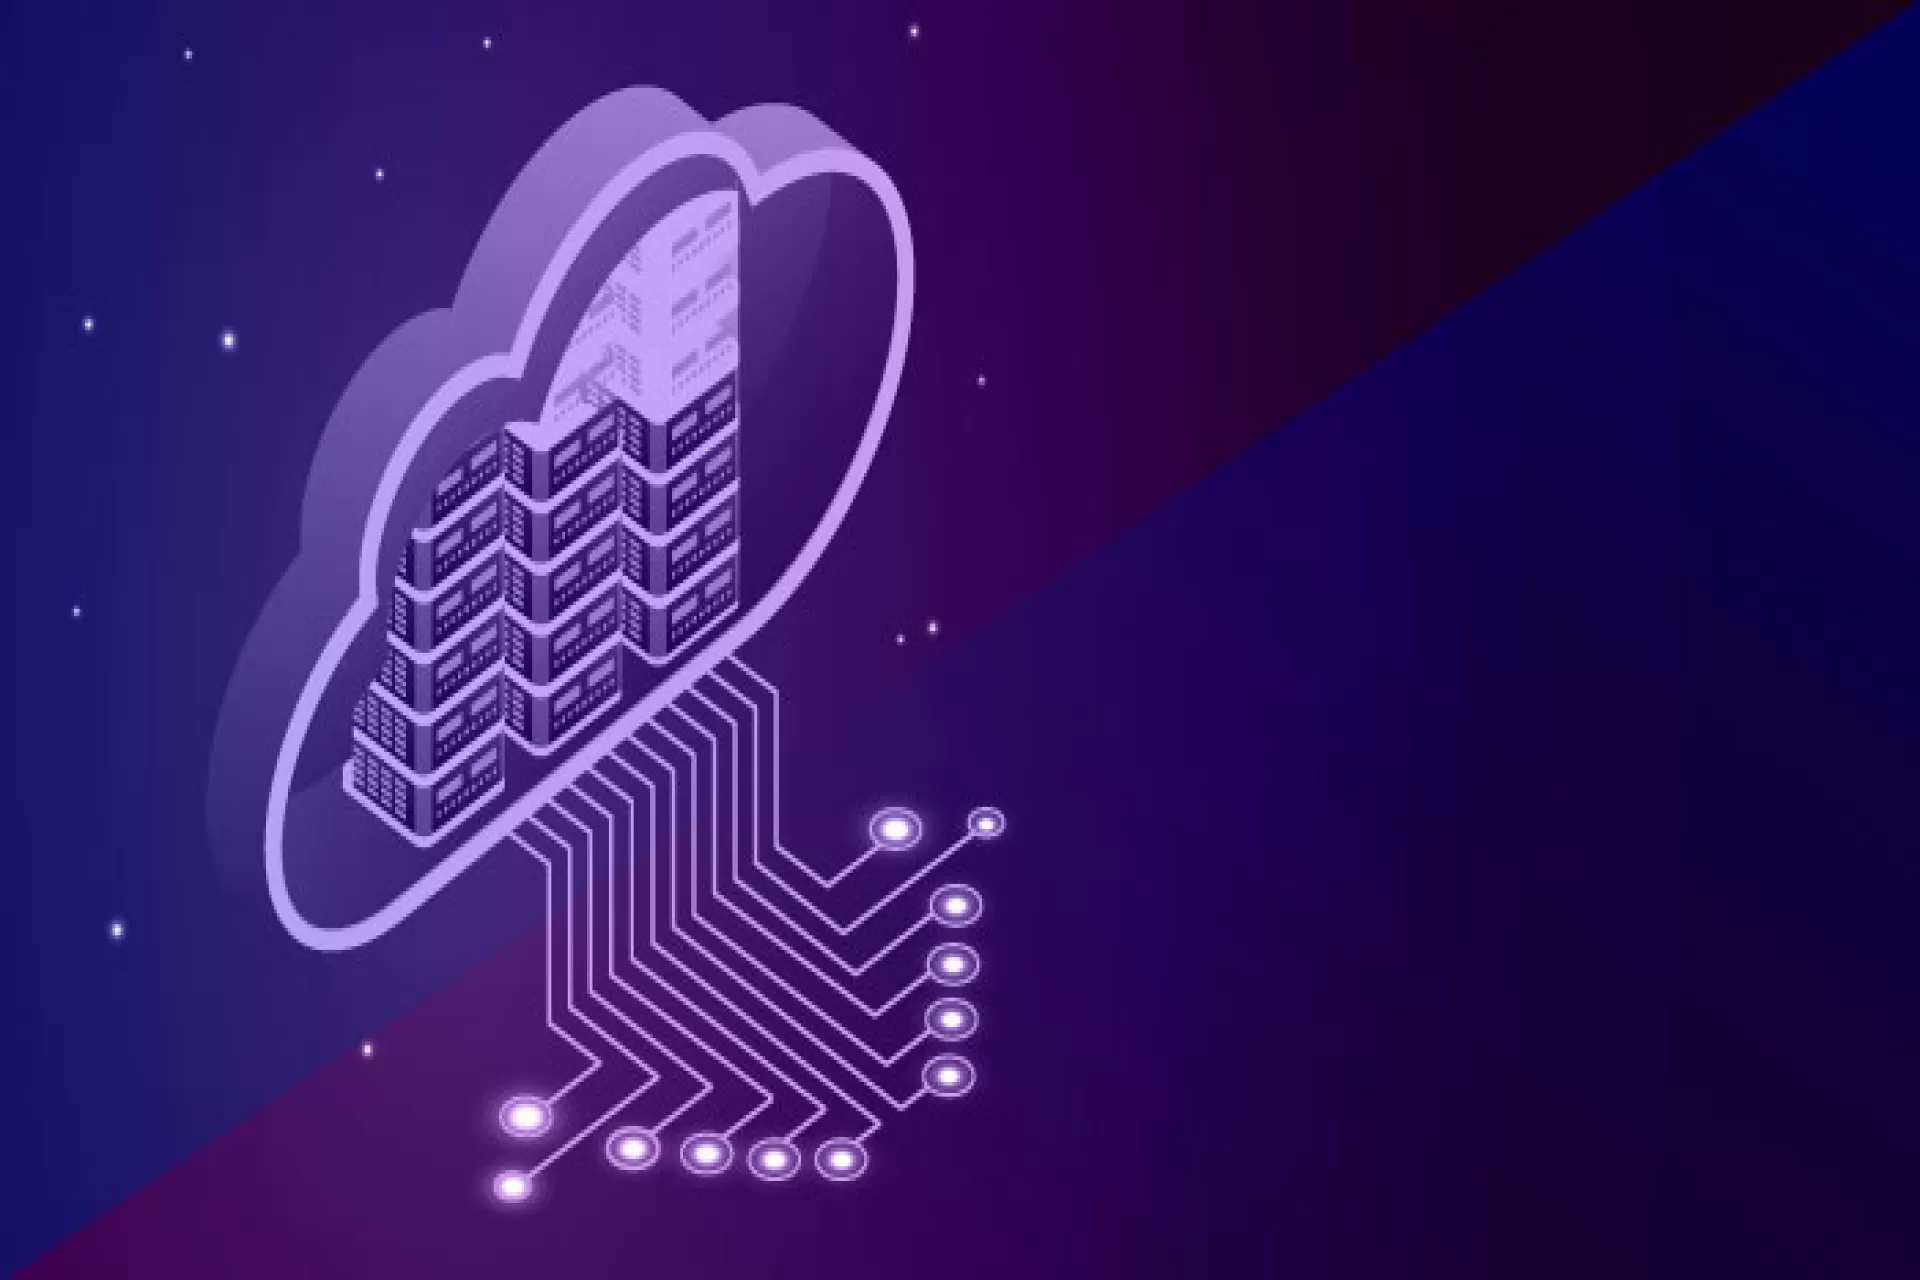 Flexpod Managed Private Cloud using The Vinci™- Zensar's Smart Autonomics Platform